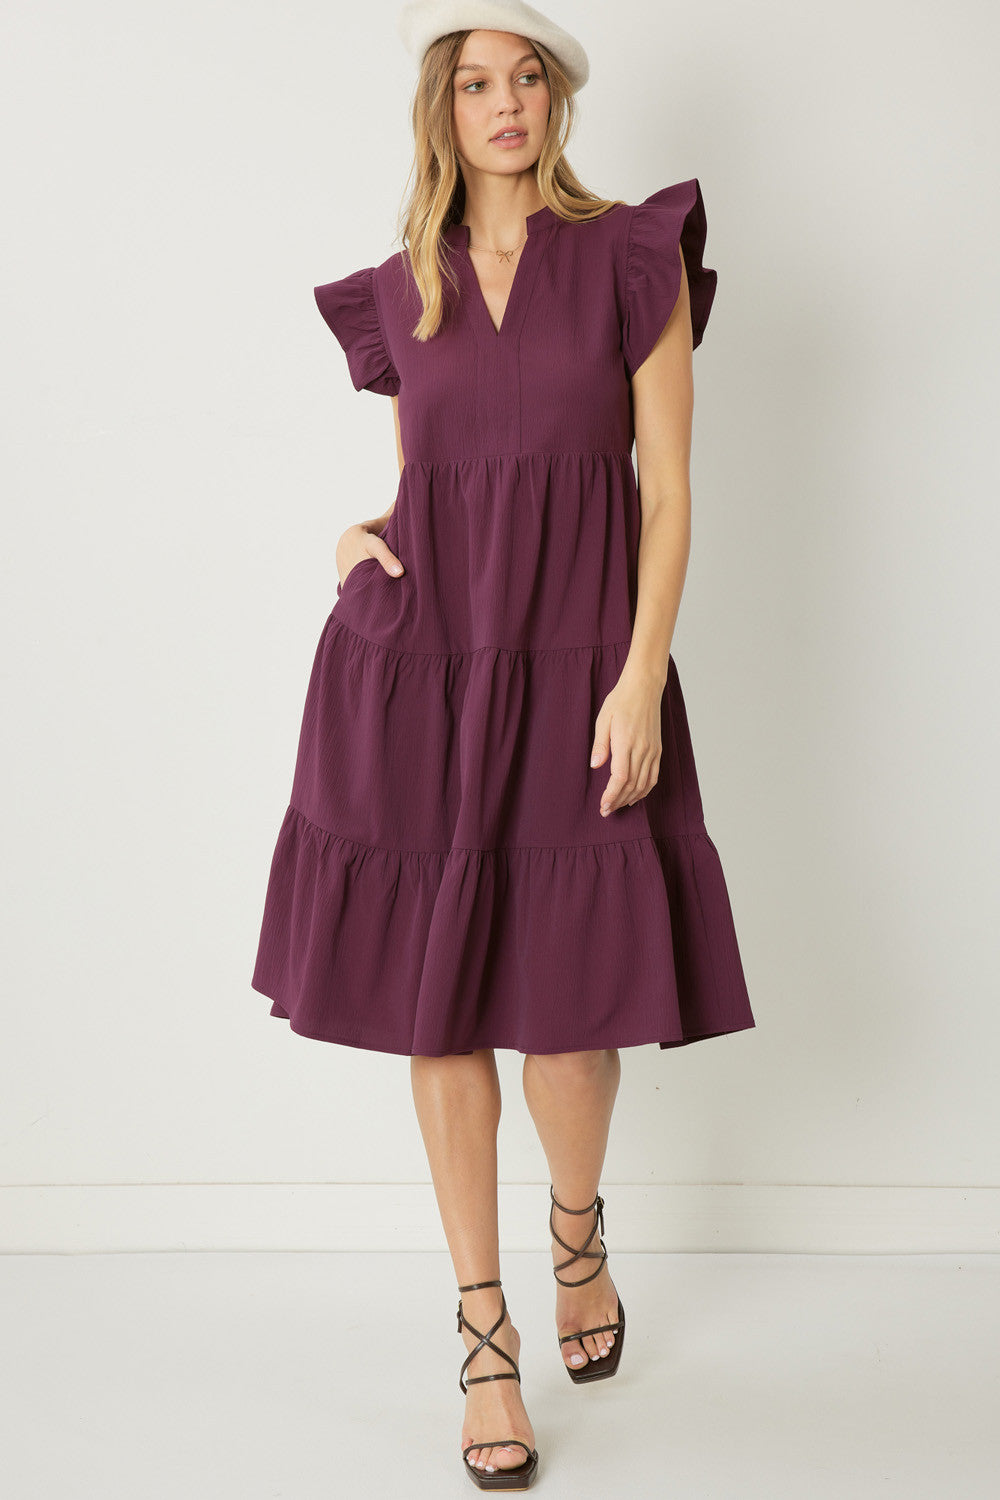 Darla Ruffle Midi Dress (2 Colors!)